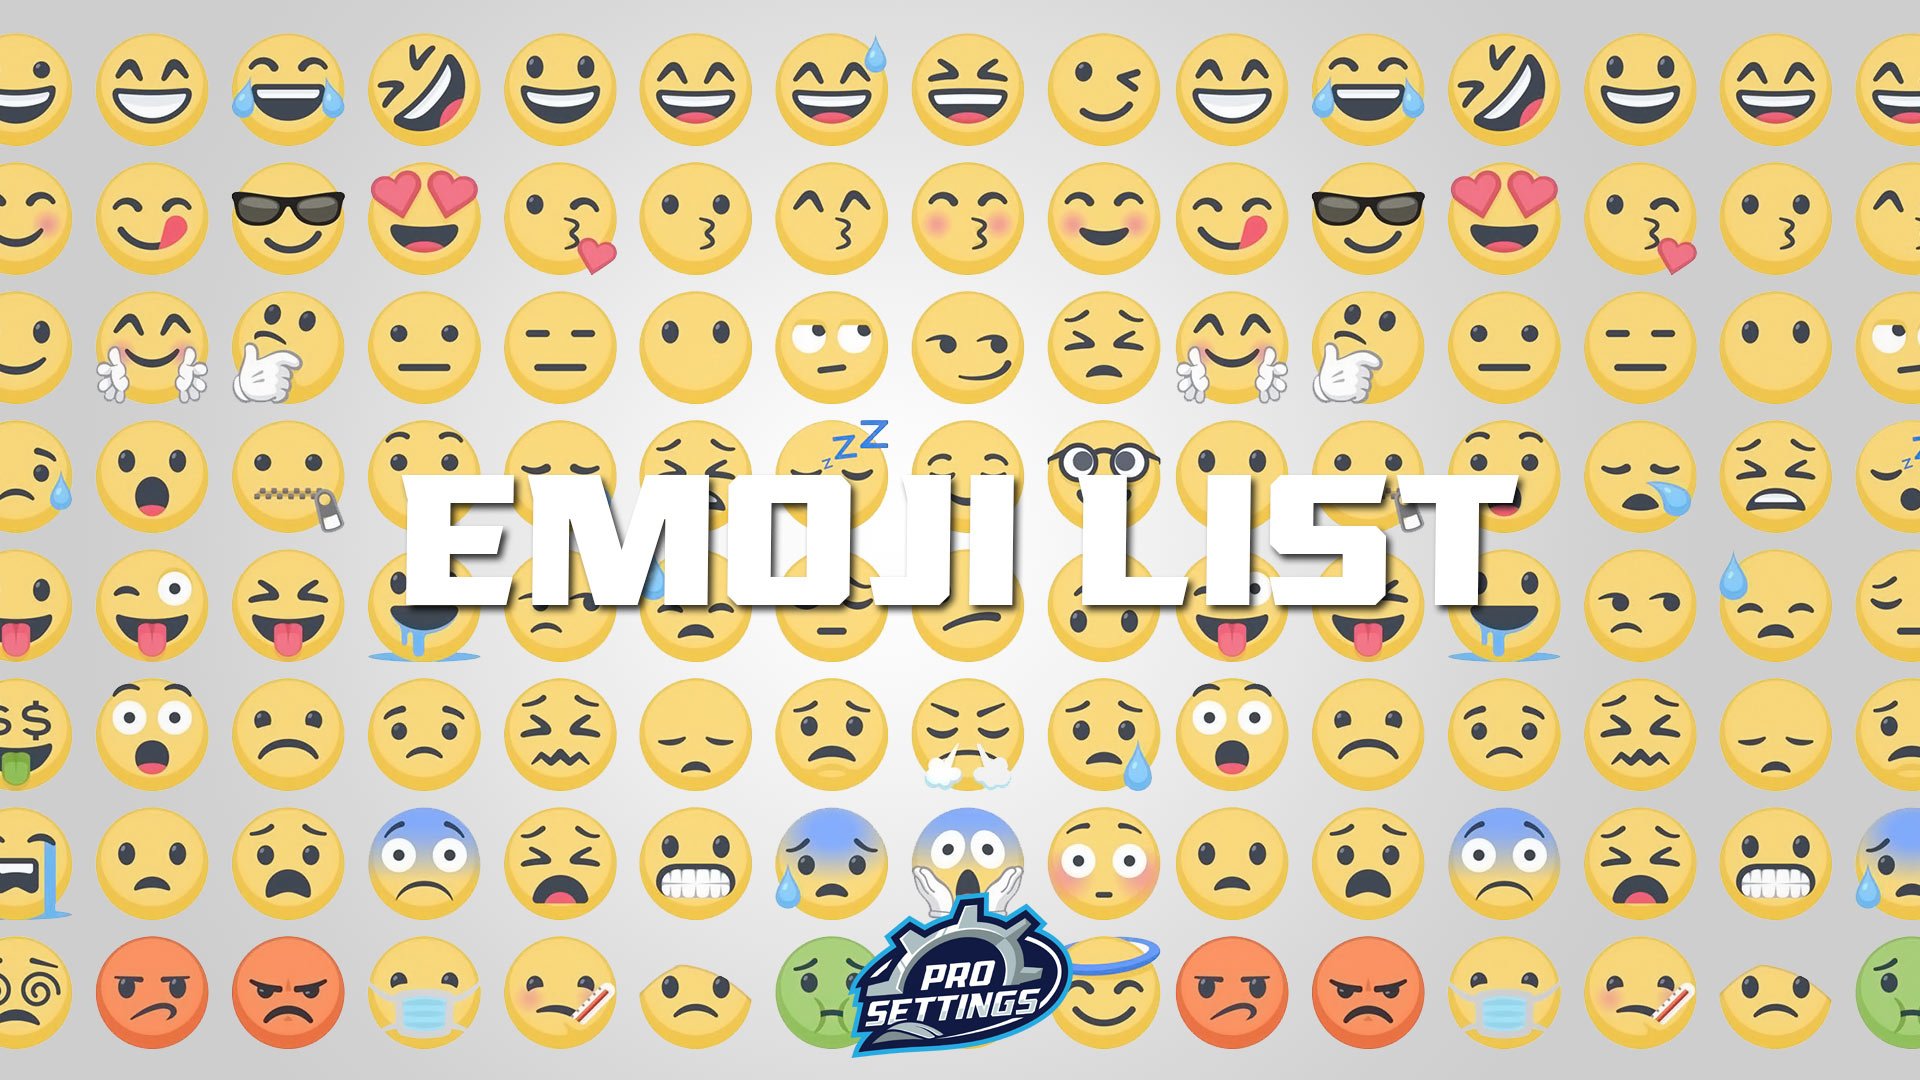 Full List Of Emojis Prosettings Com